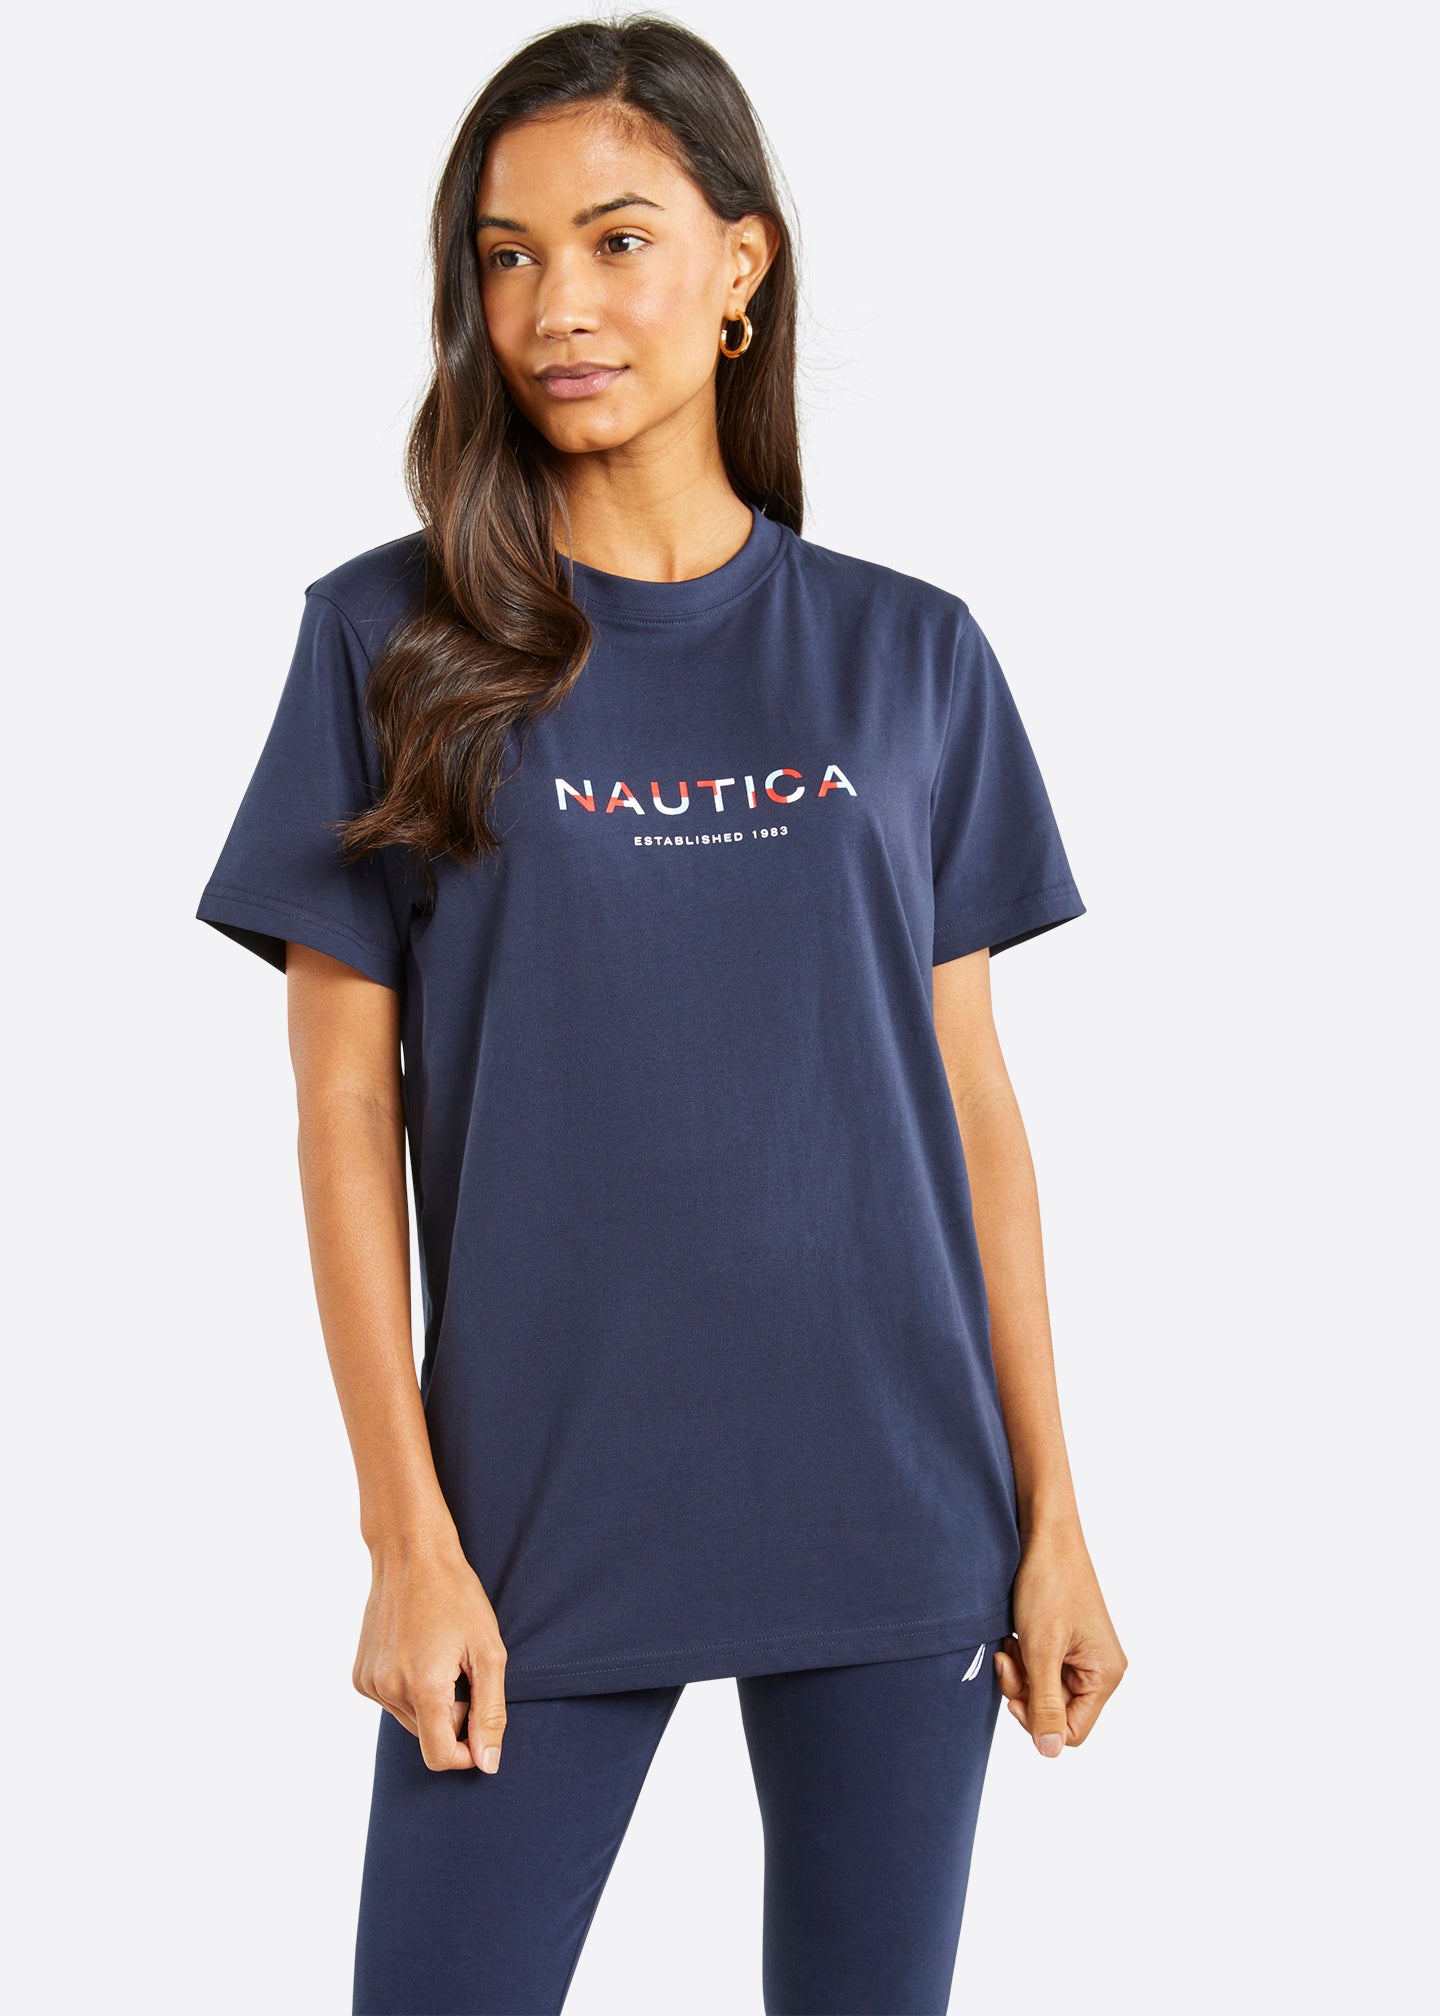 Nautica Womens T Shirts & Tees